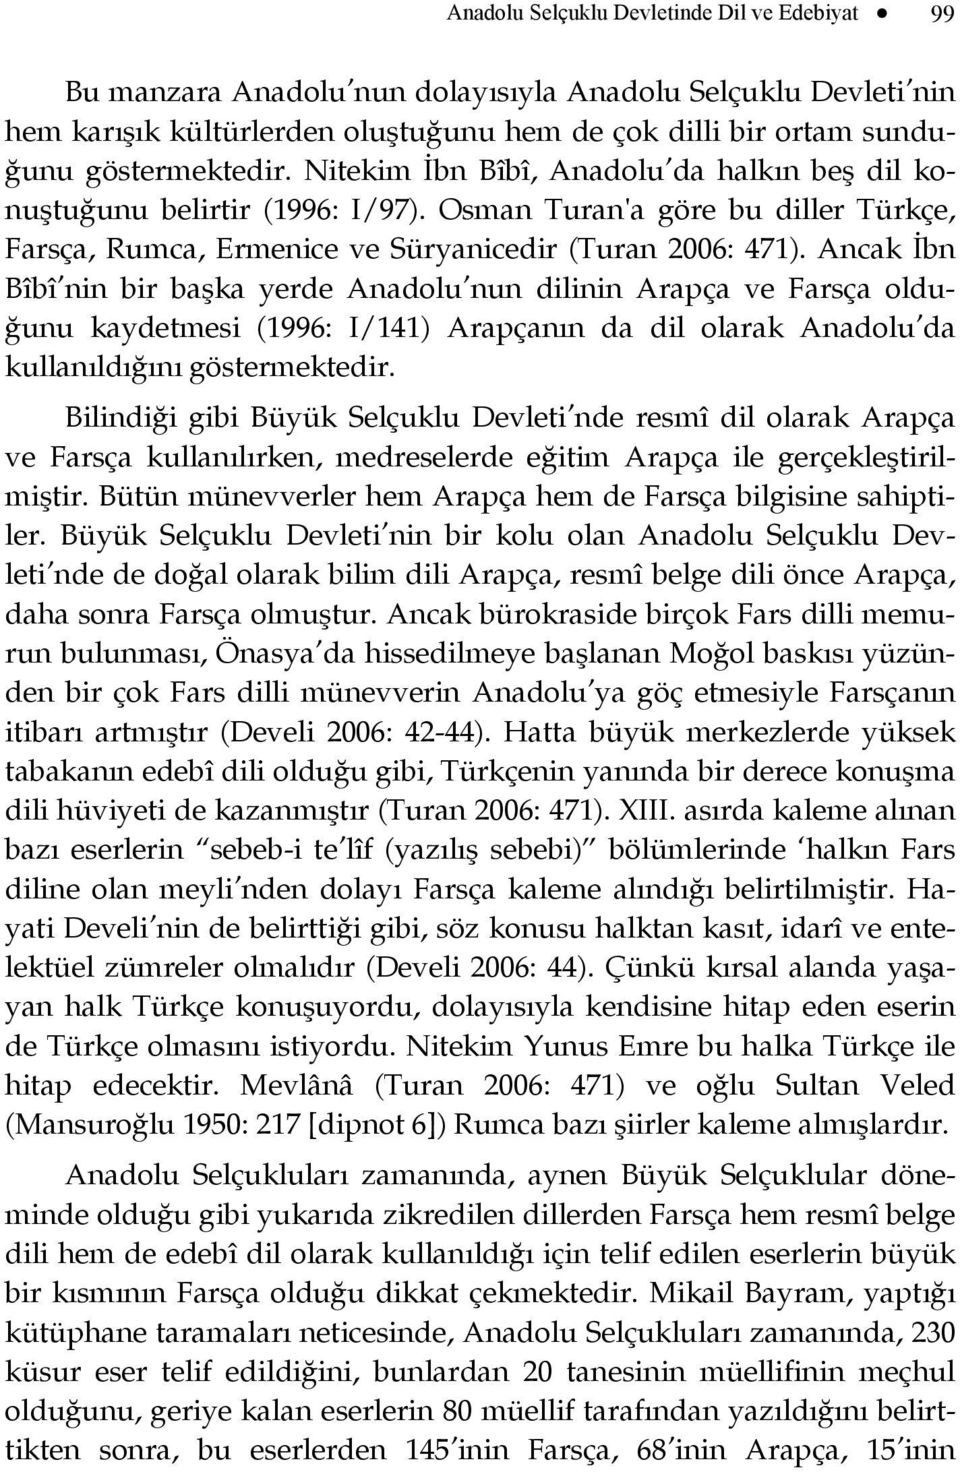 Ancak İbn Bîbî nin bir başka yerde Anadolu nun dilinin Arapça ve Farsça olduğunu kaydetmesi (1996: I/141) Arapçanın da dil olarak Anadolu da kullanıldığını göstermektedir.